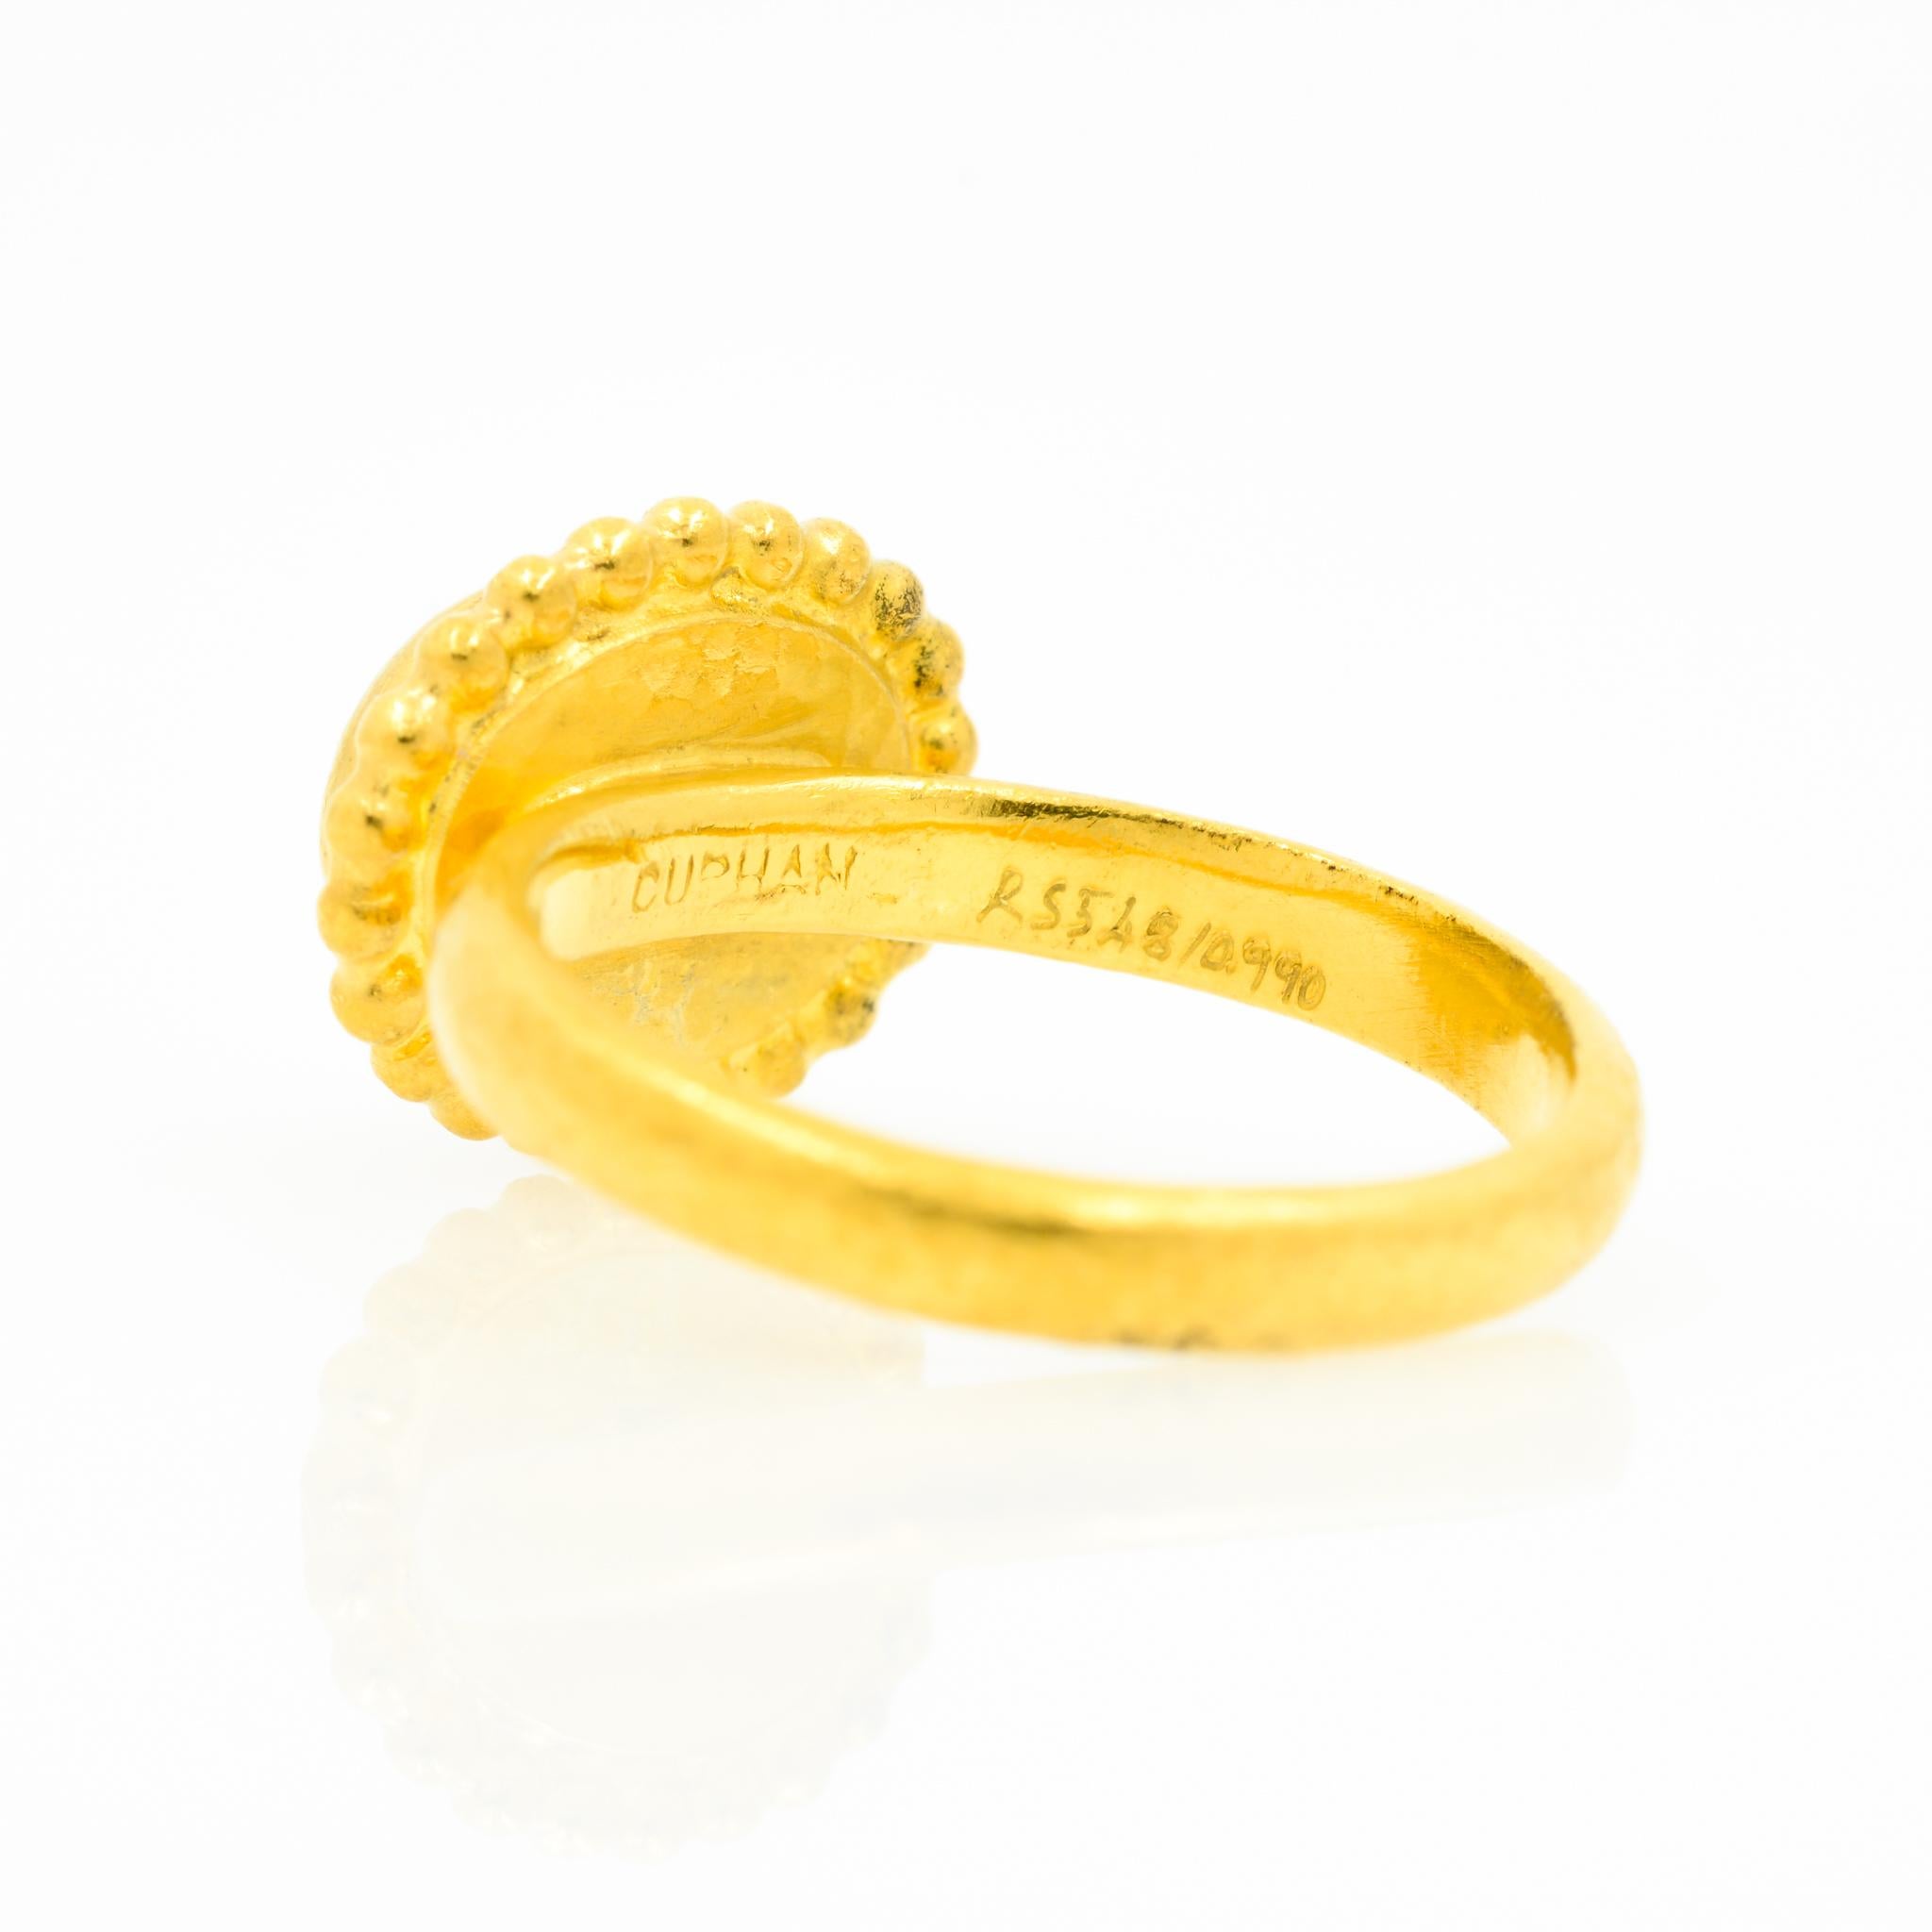 Gurhan 24 Karat Gold Turquoise Ring 2